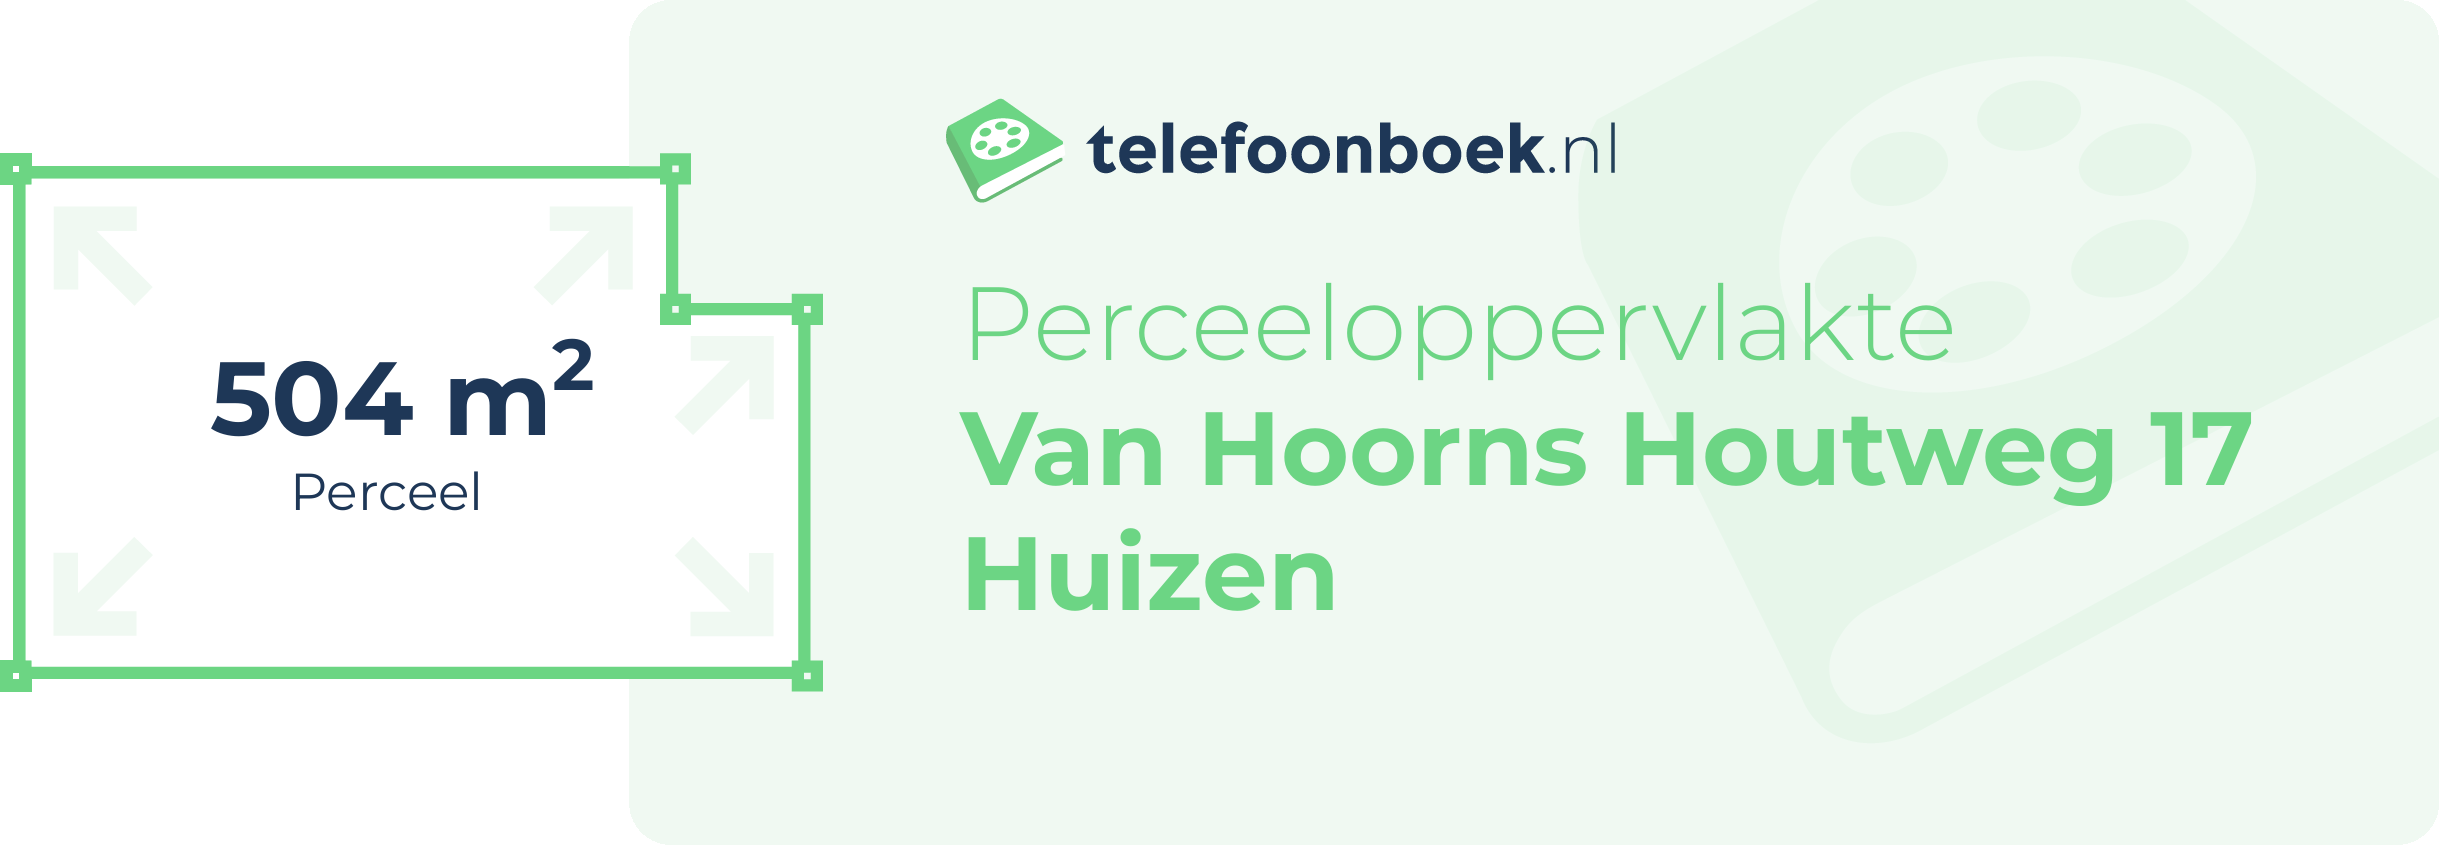 Perceeloppervlakte Van Hoorns Houtweg 17 Huizen